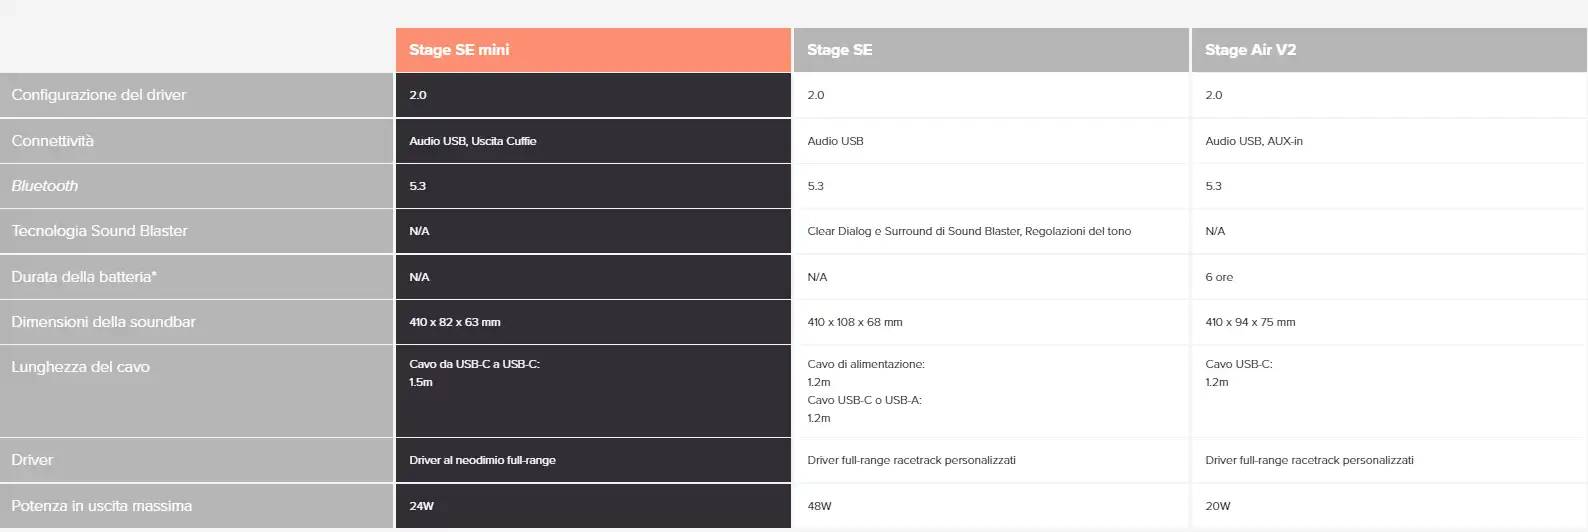 Creative Stage SE mini recensione - caratteristiche, specifiche, design, confronto con Stage SE e unboxing